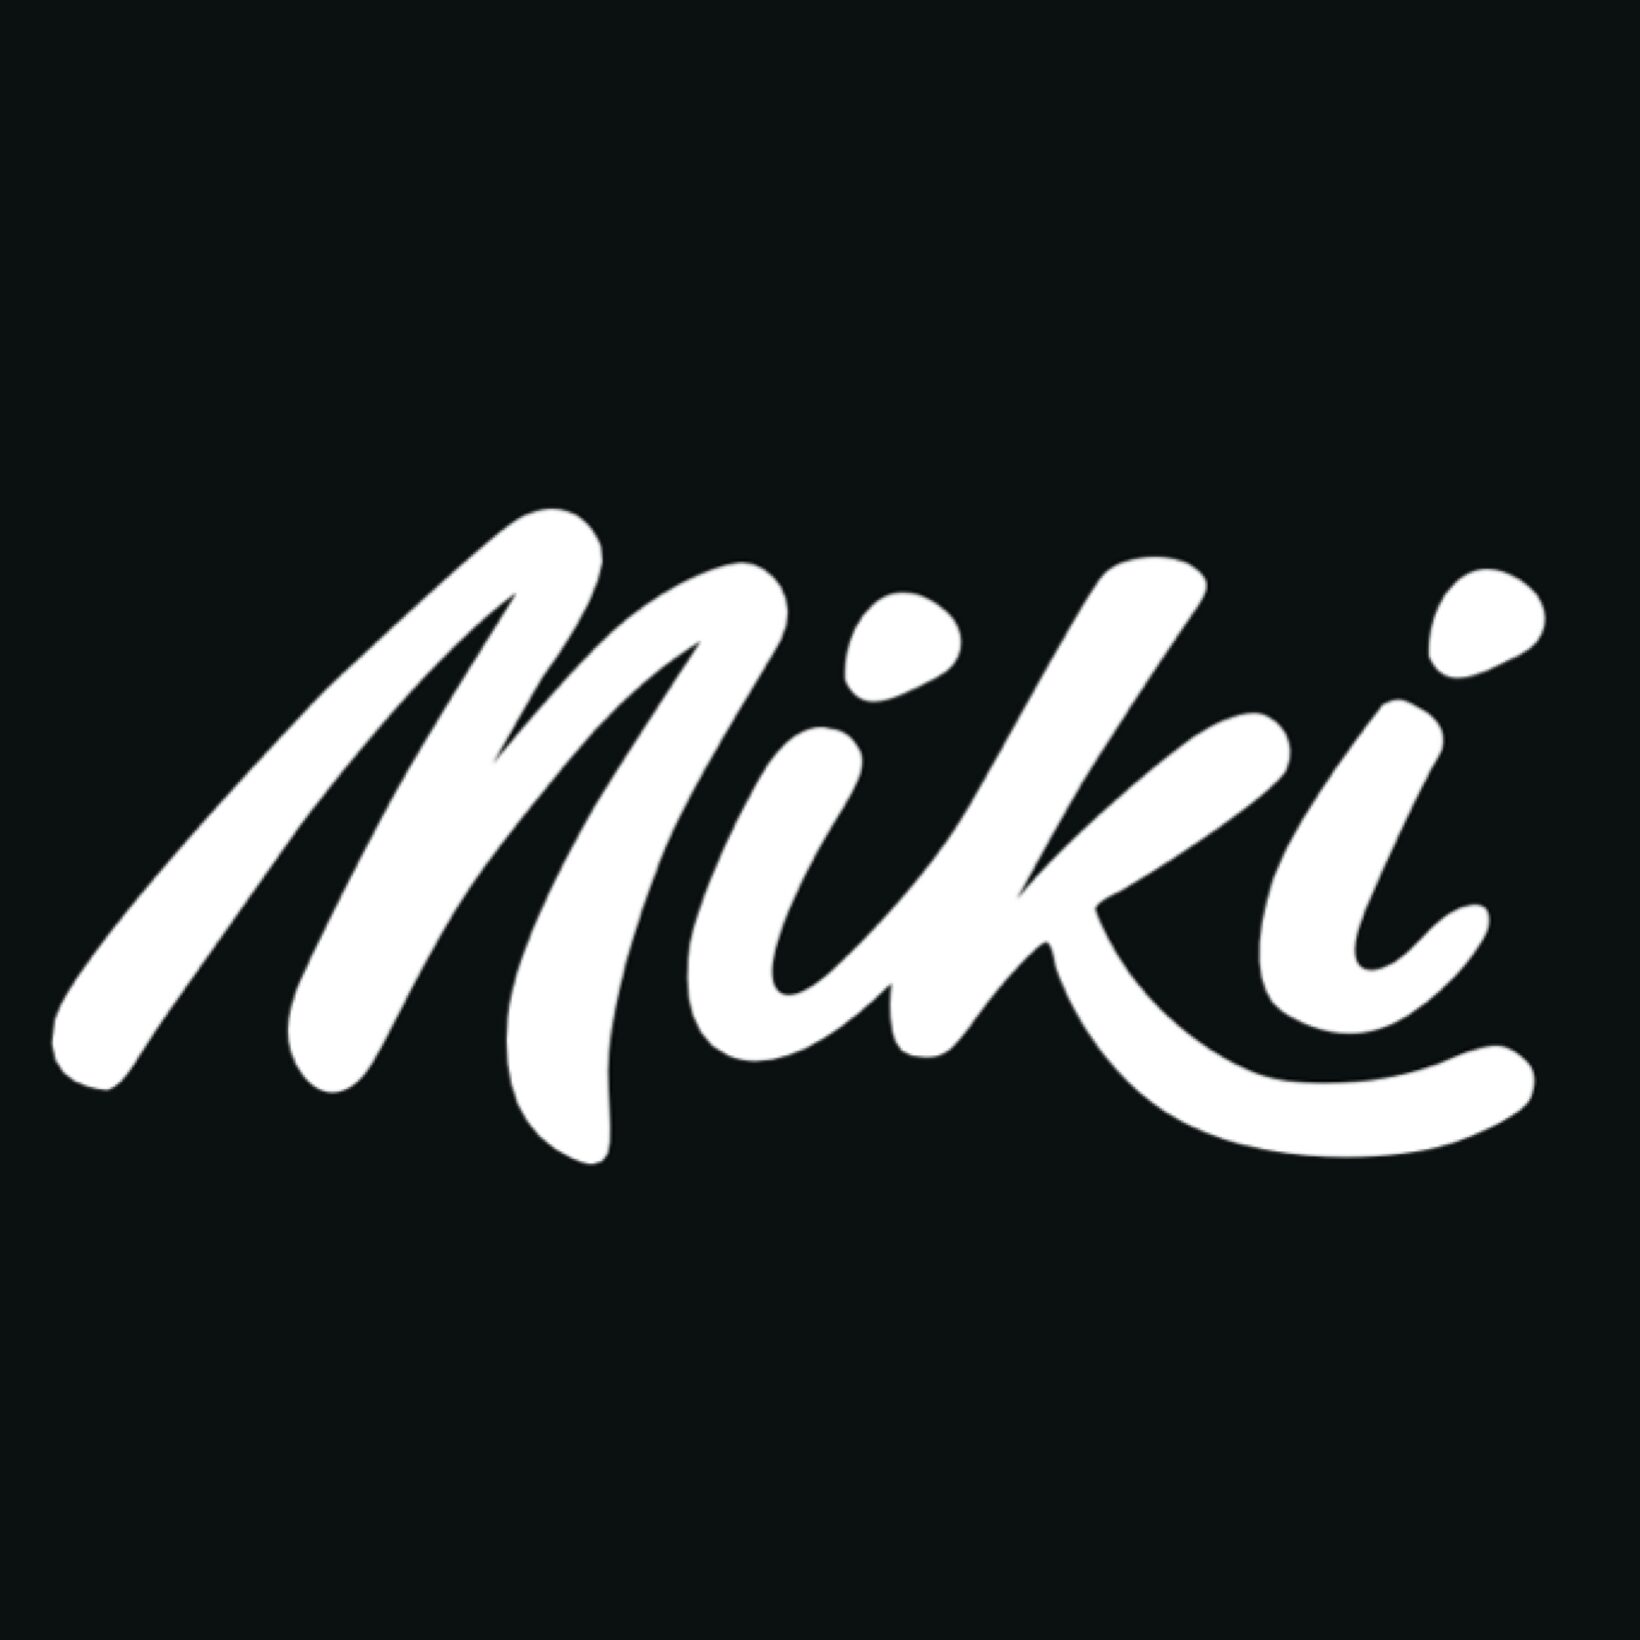 Miki(ミキ)アイコンの画像